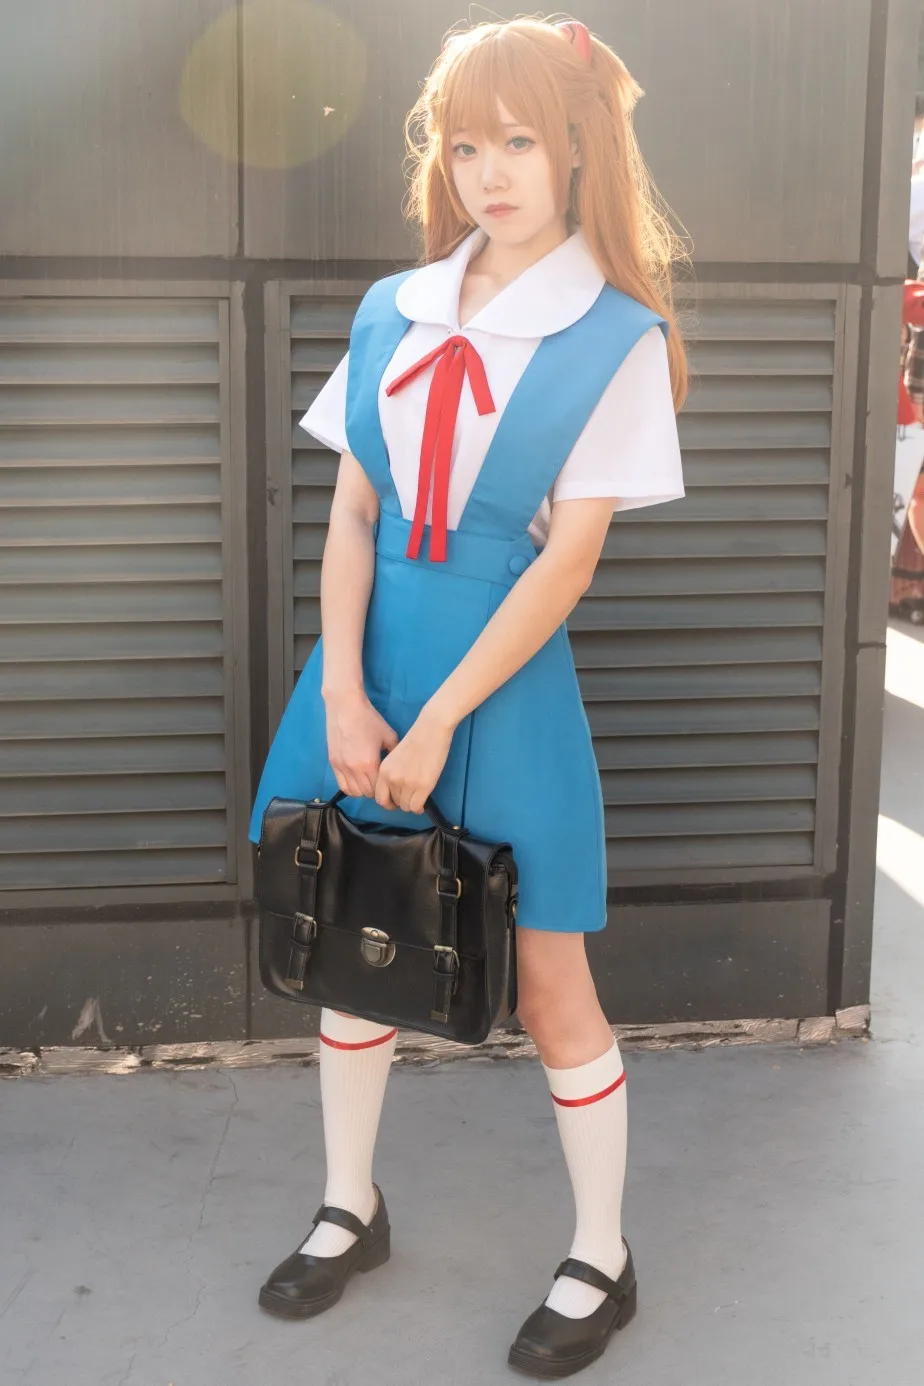 School girl Asuka Langley Soryu Evangelion Cosplay - ayanawebzine.com